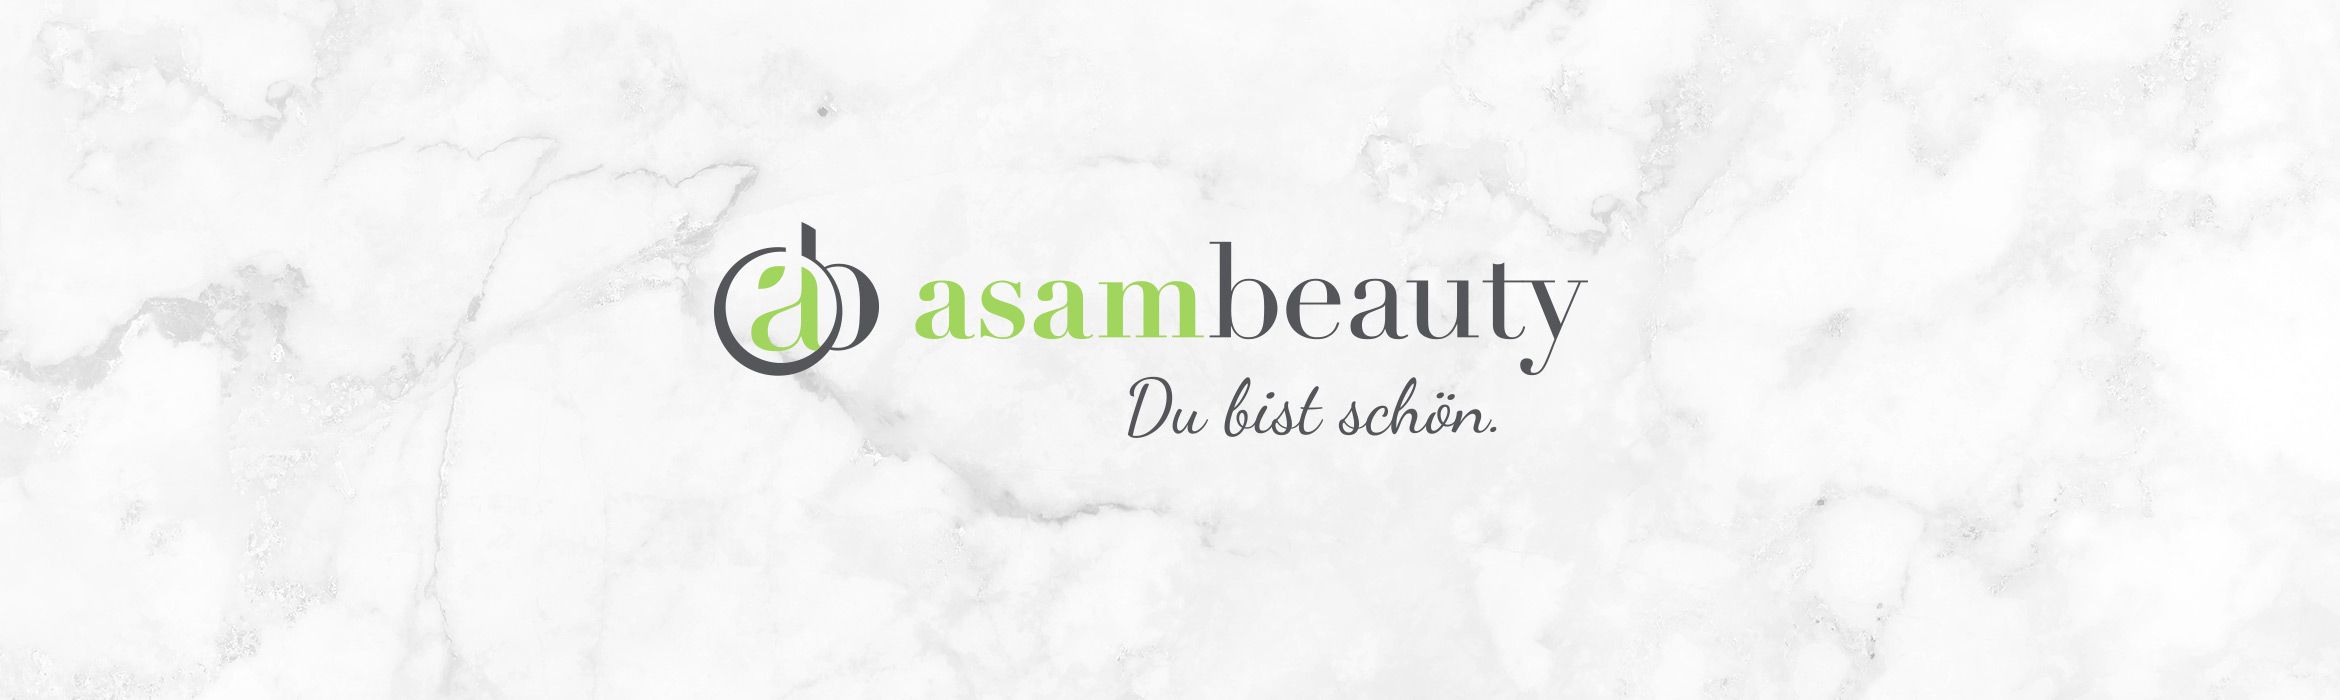 asambeauty Pflege & Kosmetik 